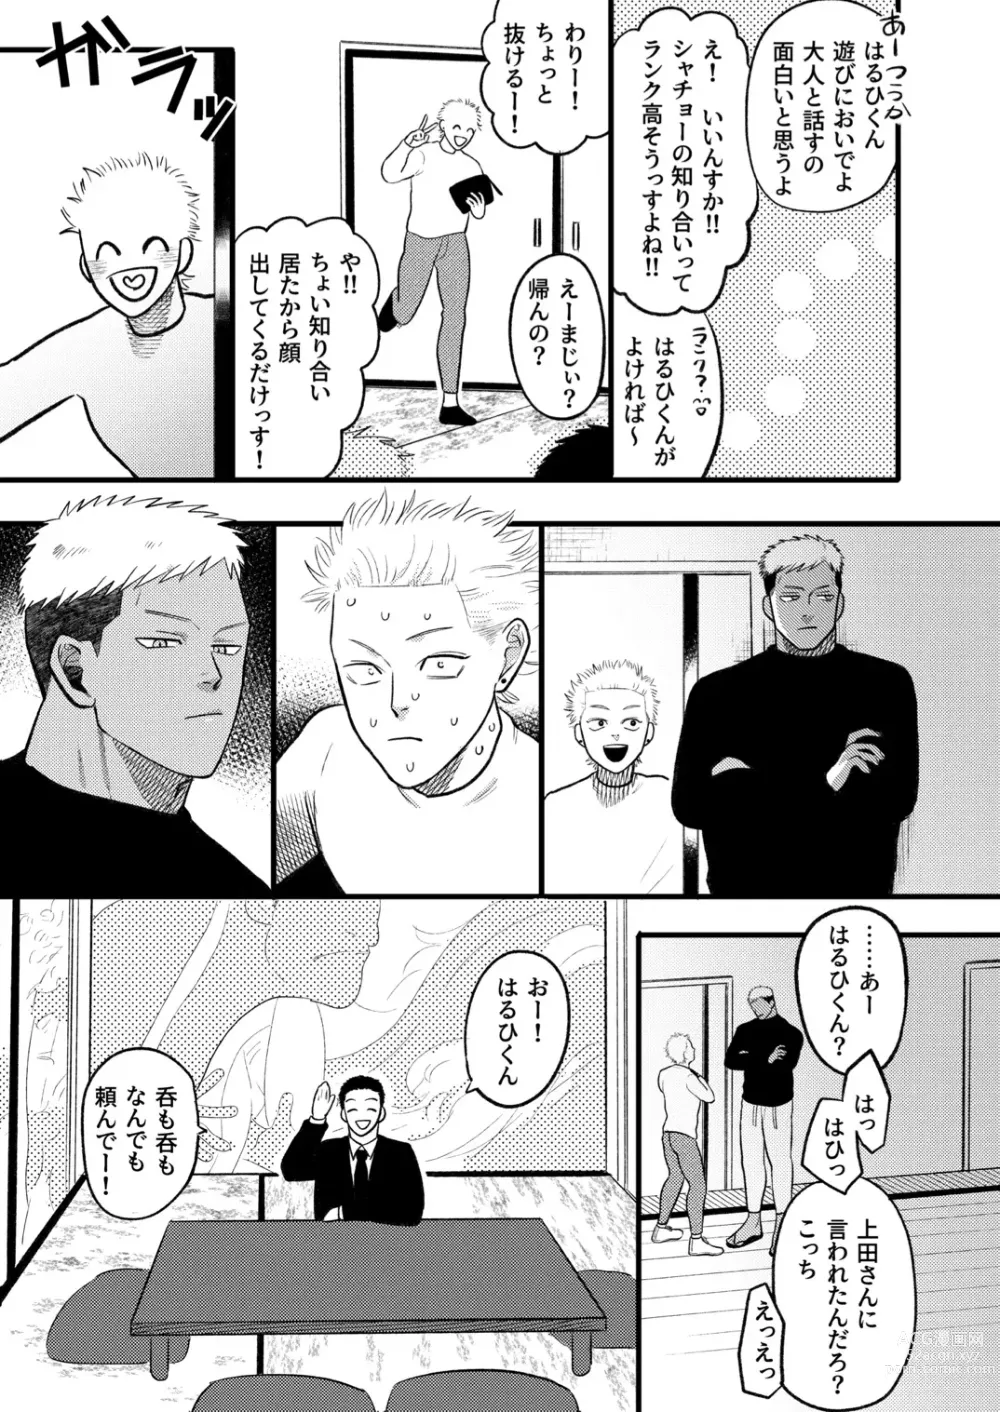 Page 10 of doujinshi Kashikoi Okane no Kasegikata